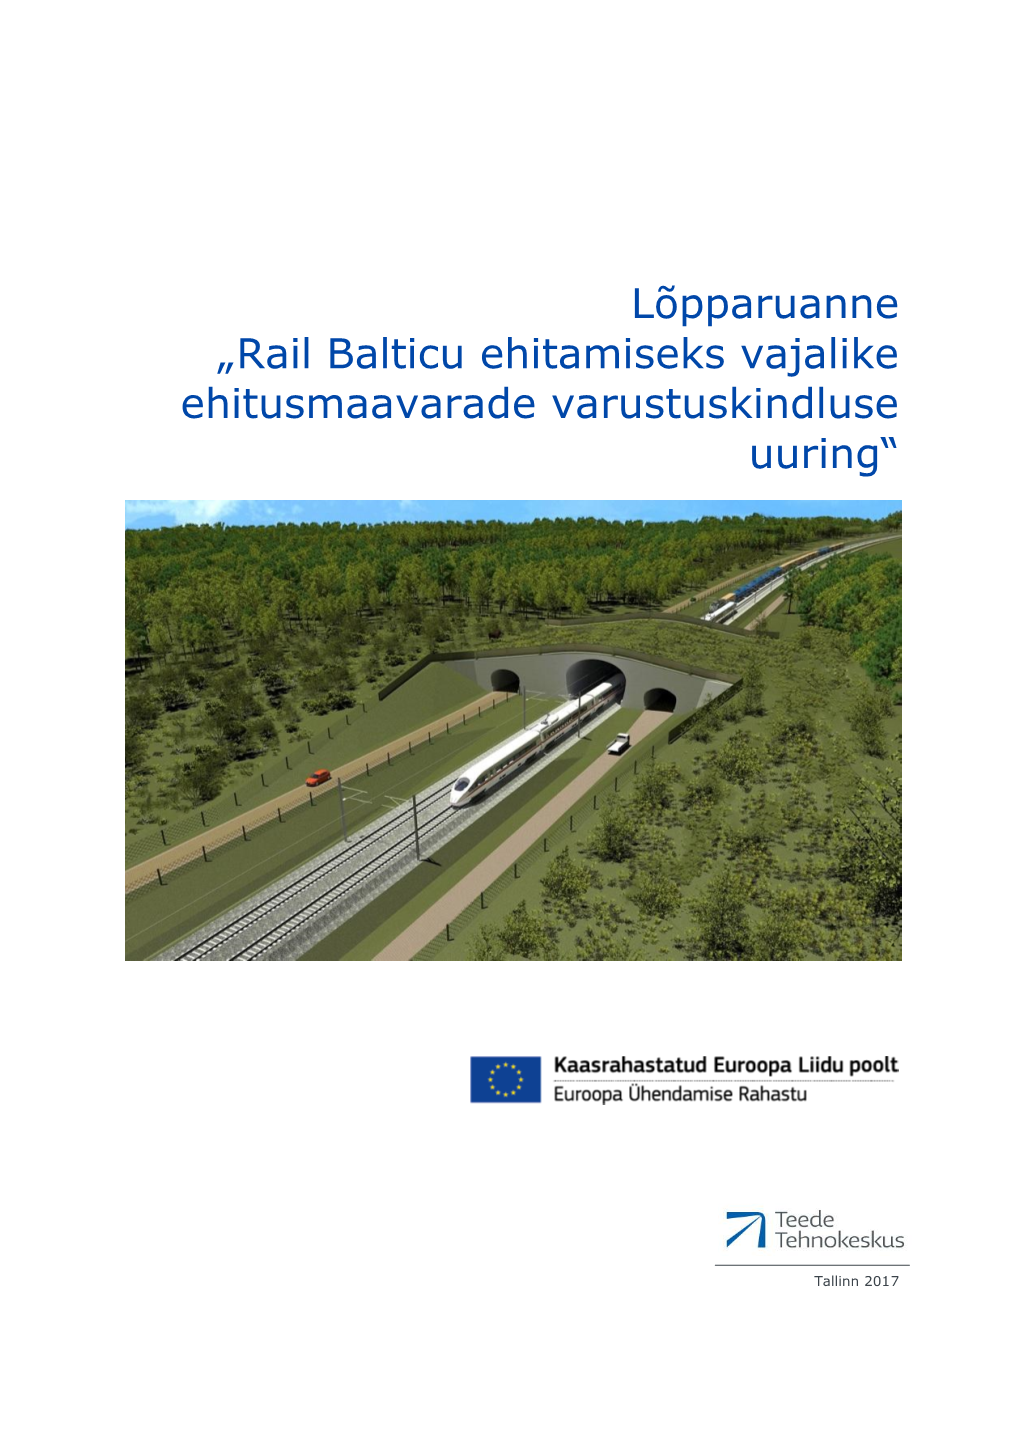 Rail Balticu Ehitamiseks Vajalike Ehitusmaavarade Varustuskindluse Uuring“